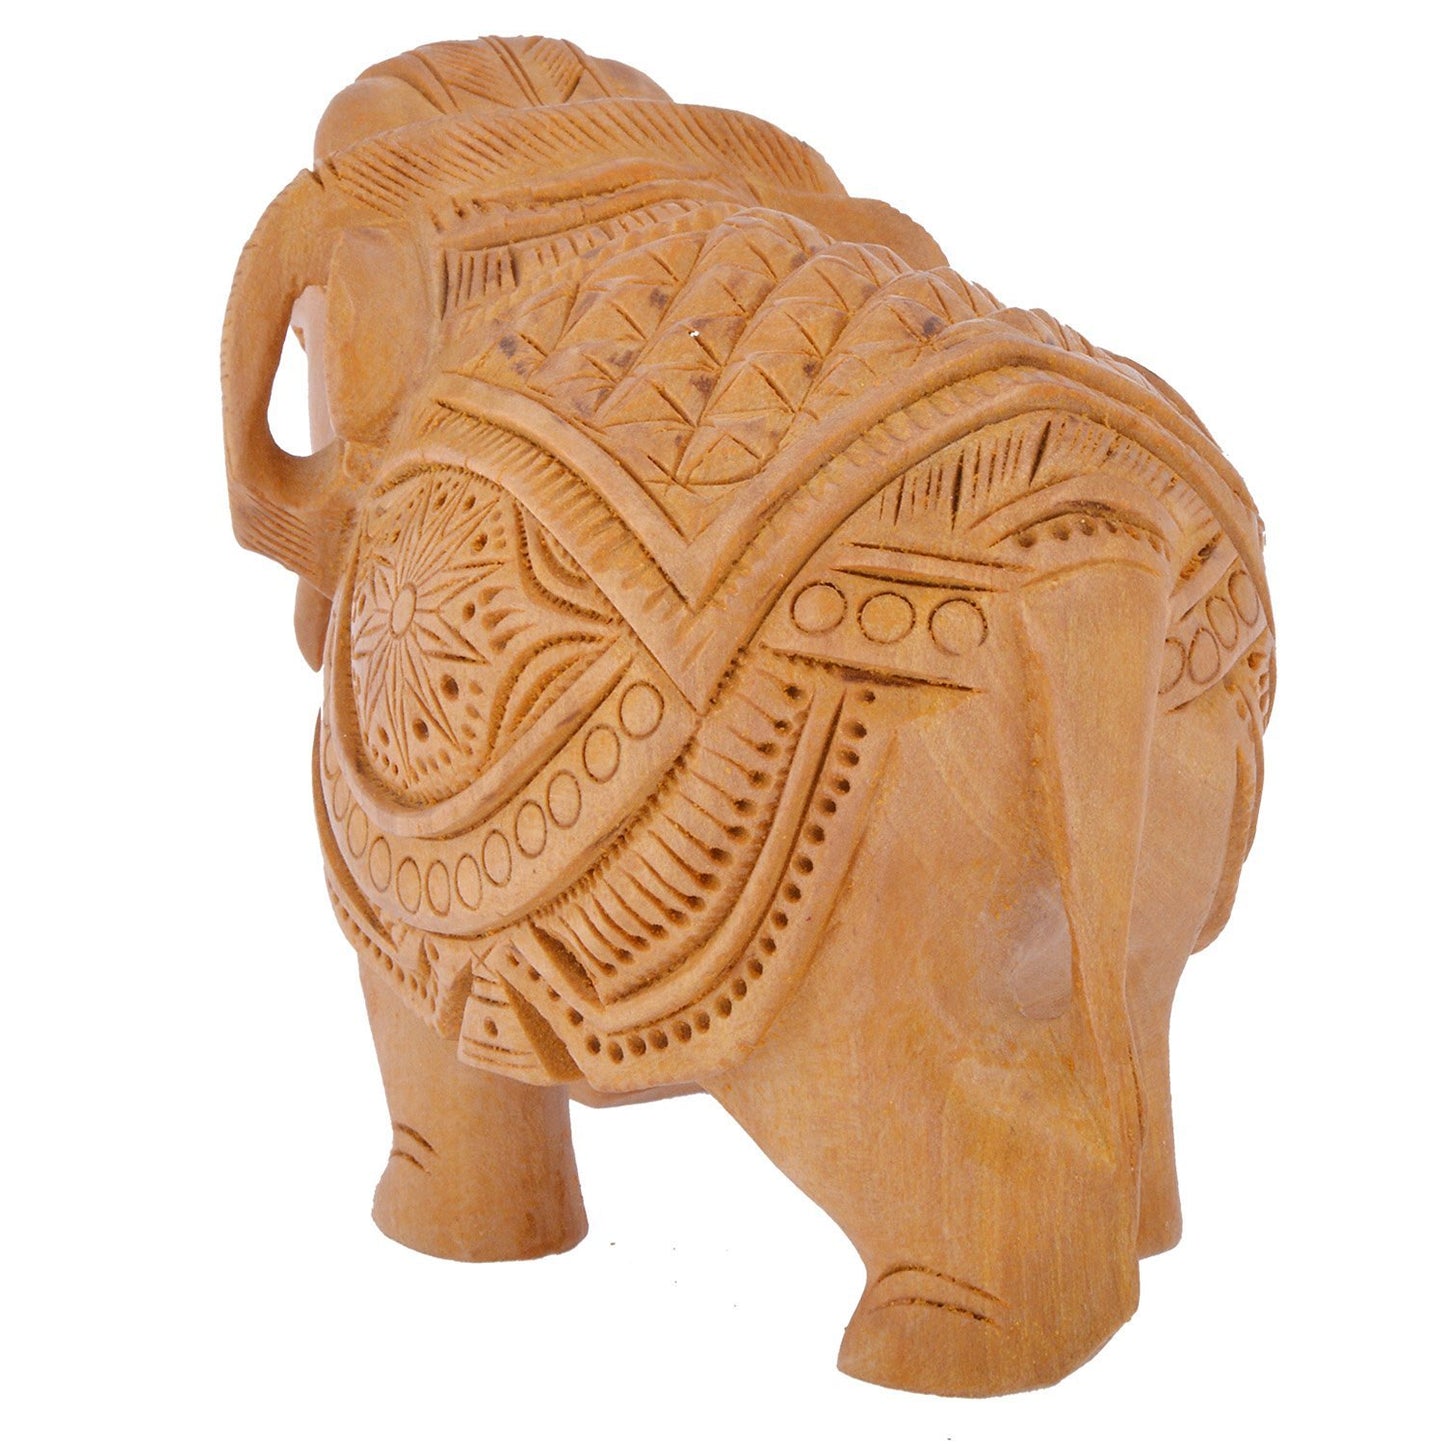 Wooden handicraft home decor elephant showpiece size 4 inch (Brown) - GreentouchCrafts